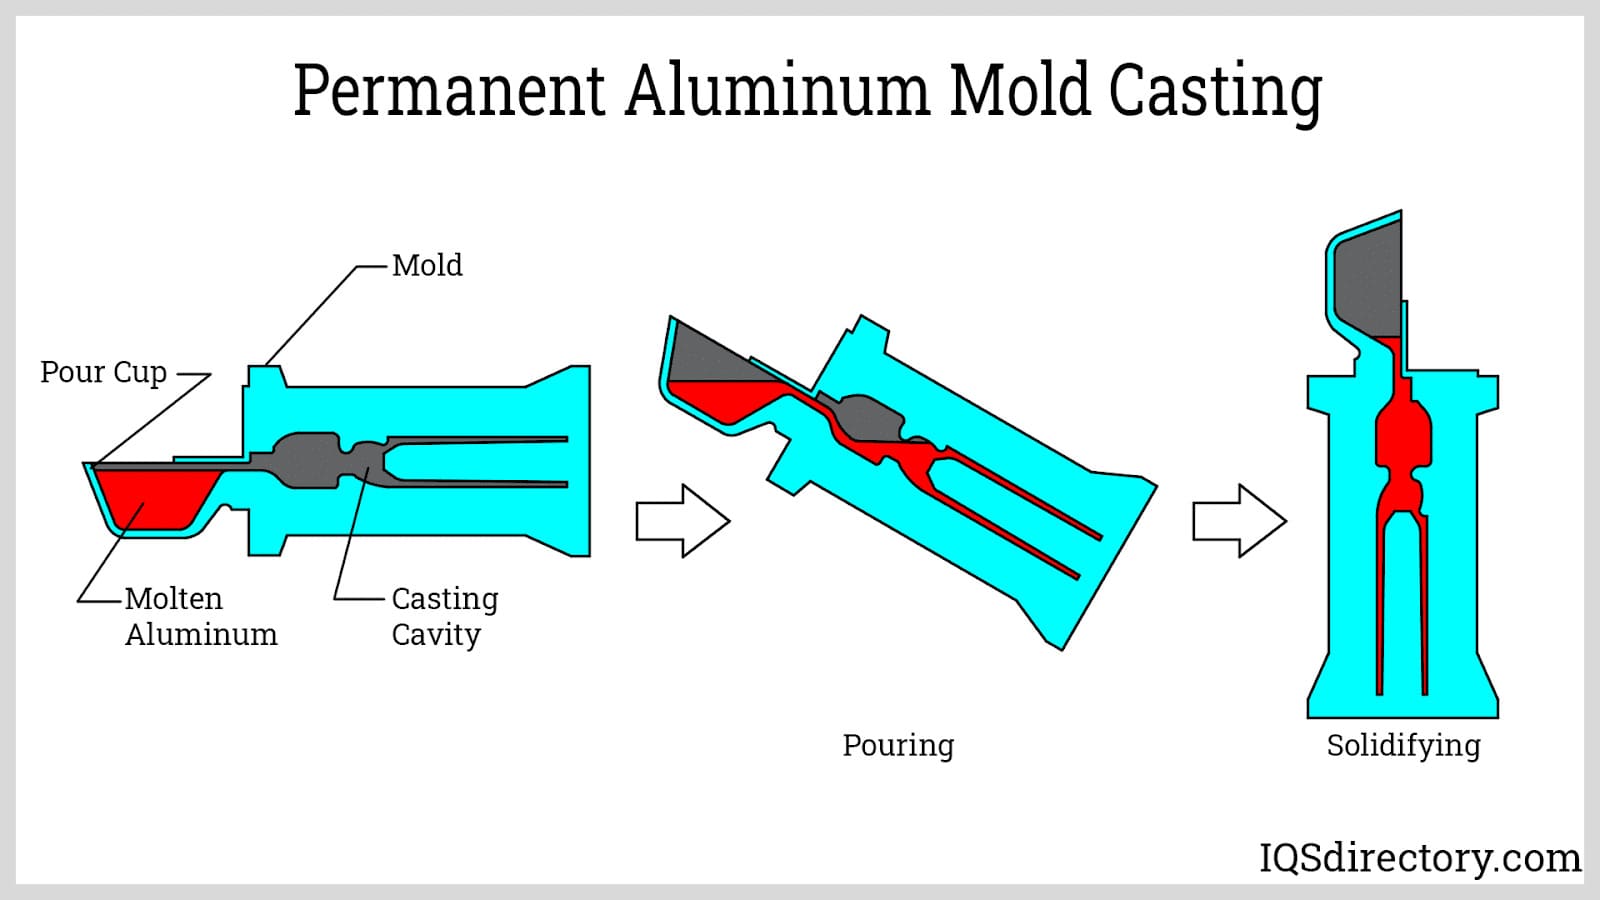 Permanent Aluminum Mold Casting